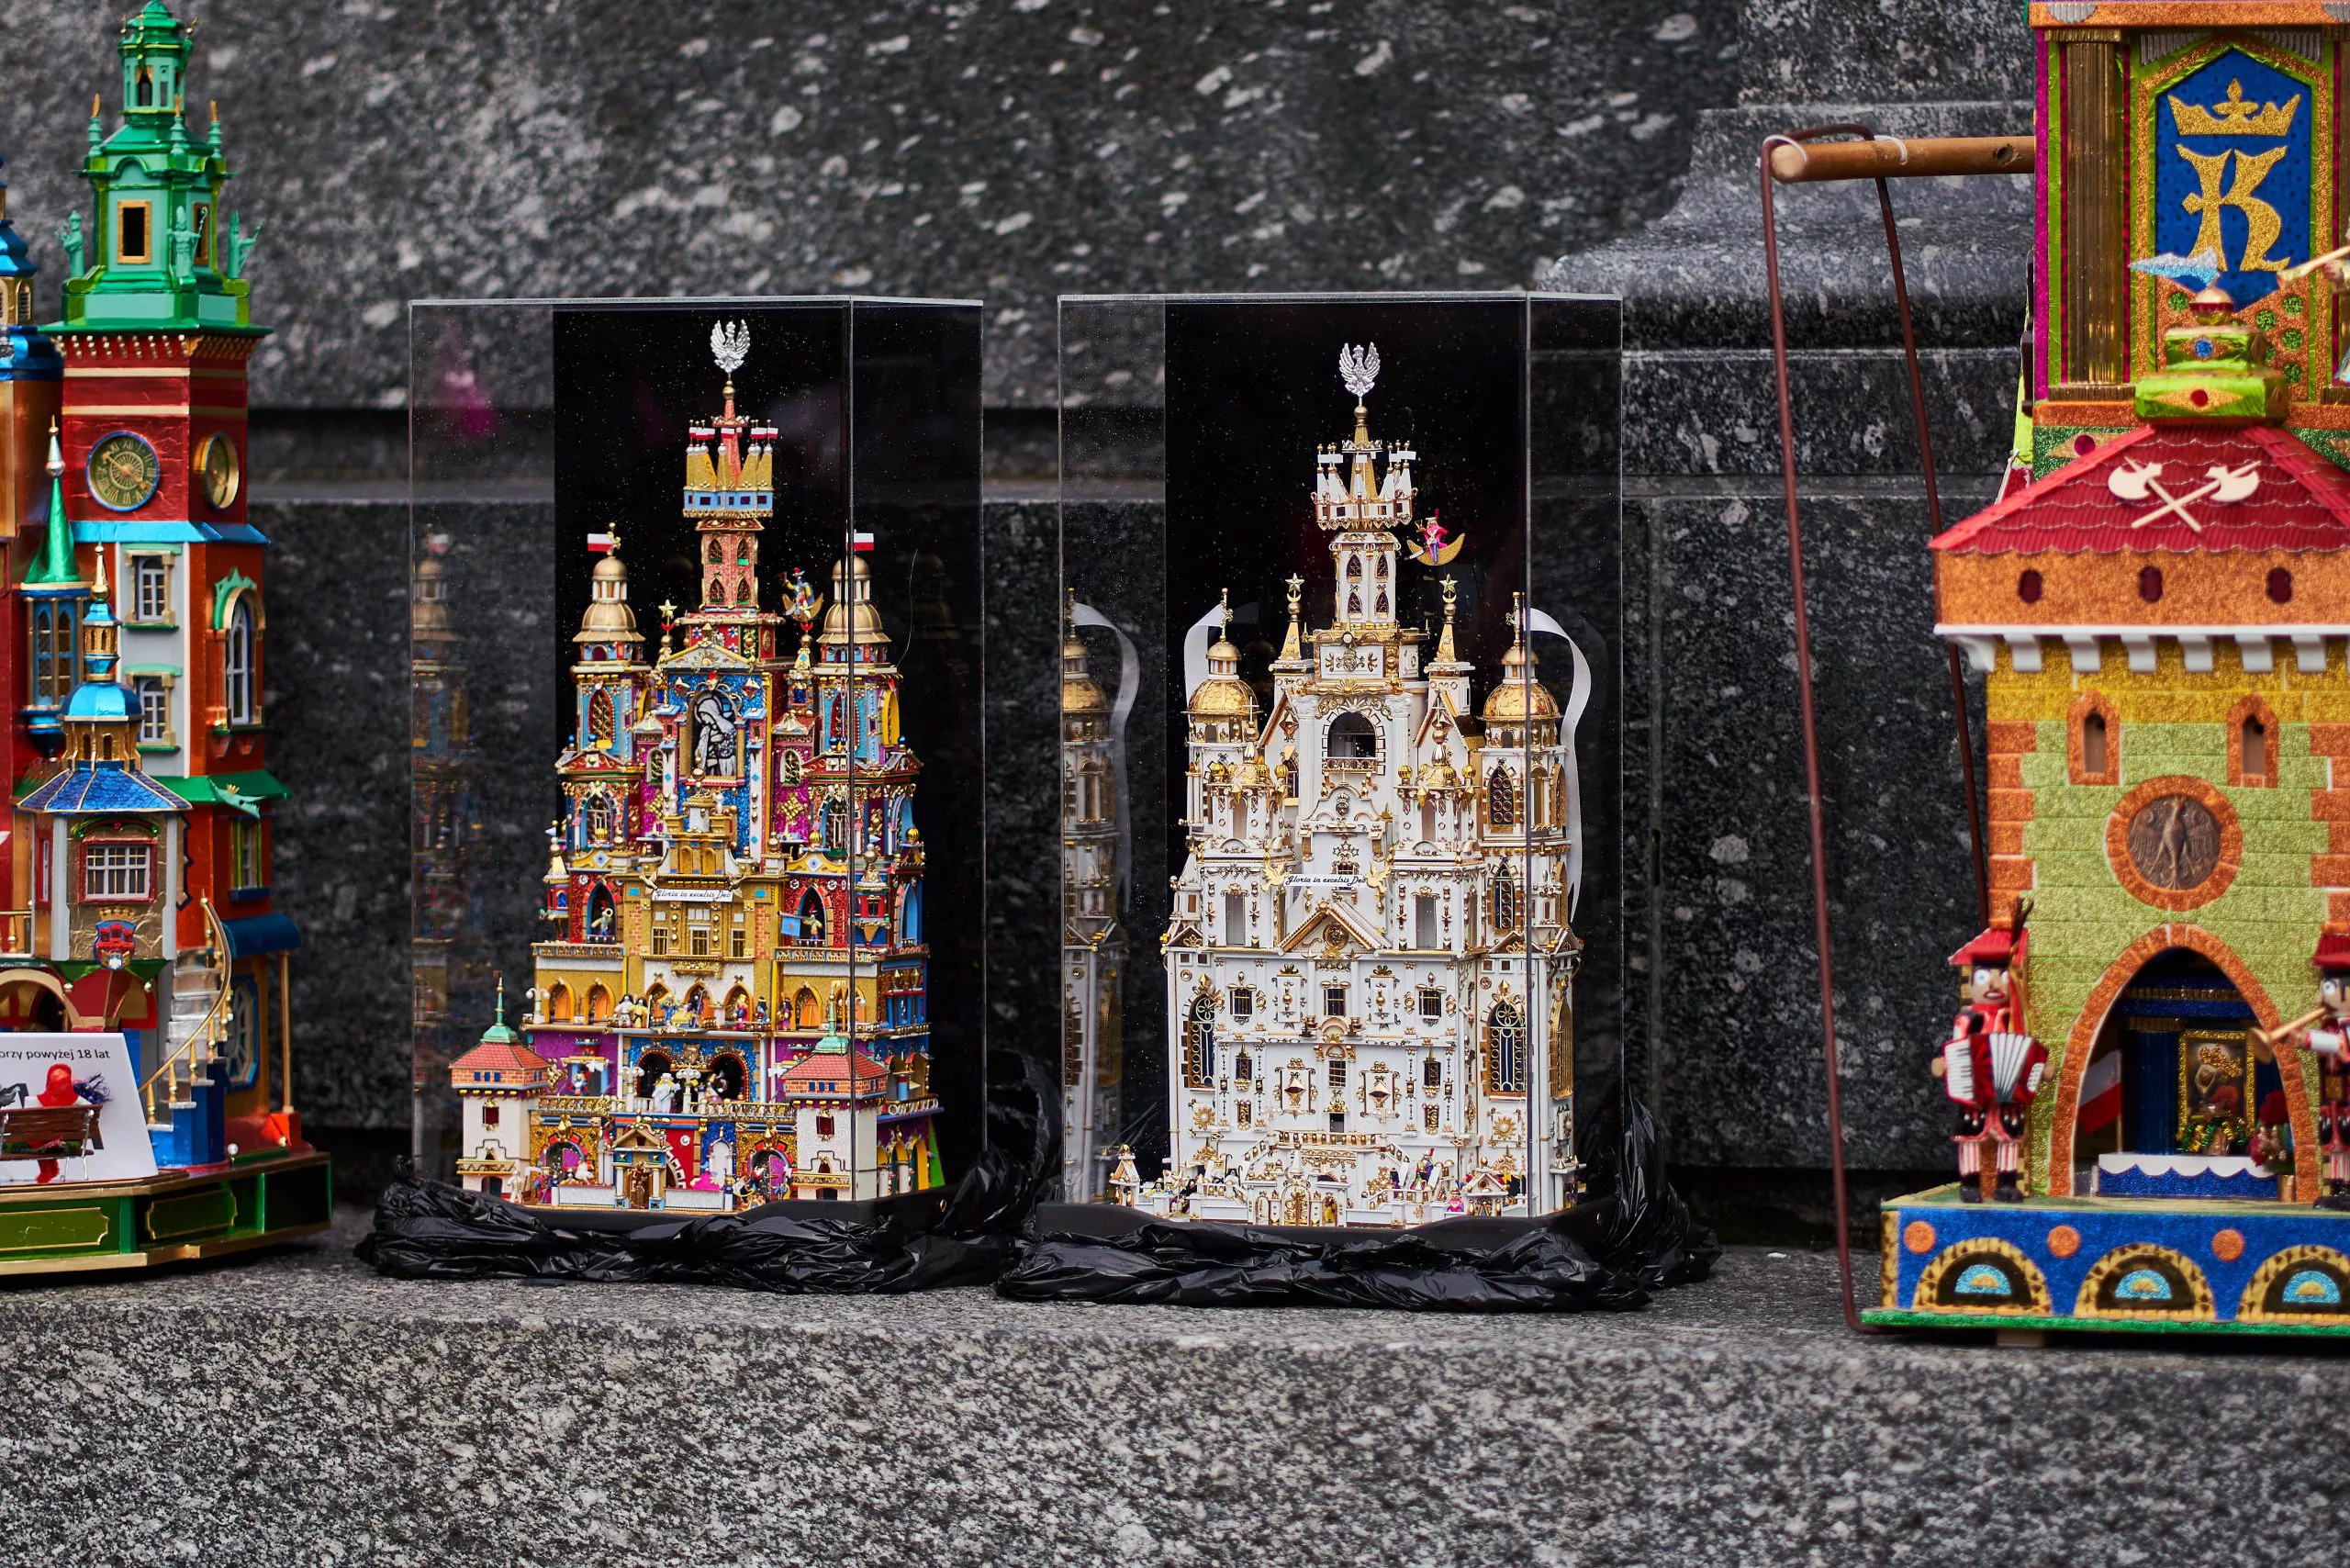 Ein Blick auf vier wunderschöne, farbenfrohe, hoch aufragende, mehrstöckige Weihnachtskrippen nach Krakauer Tradition. Die beiden mittleren sind kleiner als die anderen. Die Krakauer Weihnachtskrippen stehen auf den Stufen des Adam-Mickiewicz-Denkmals.